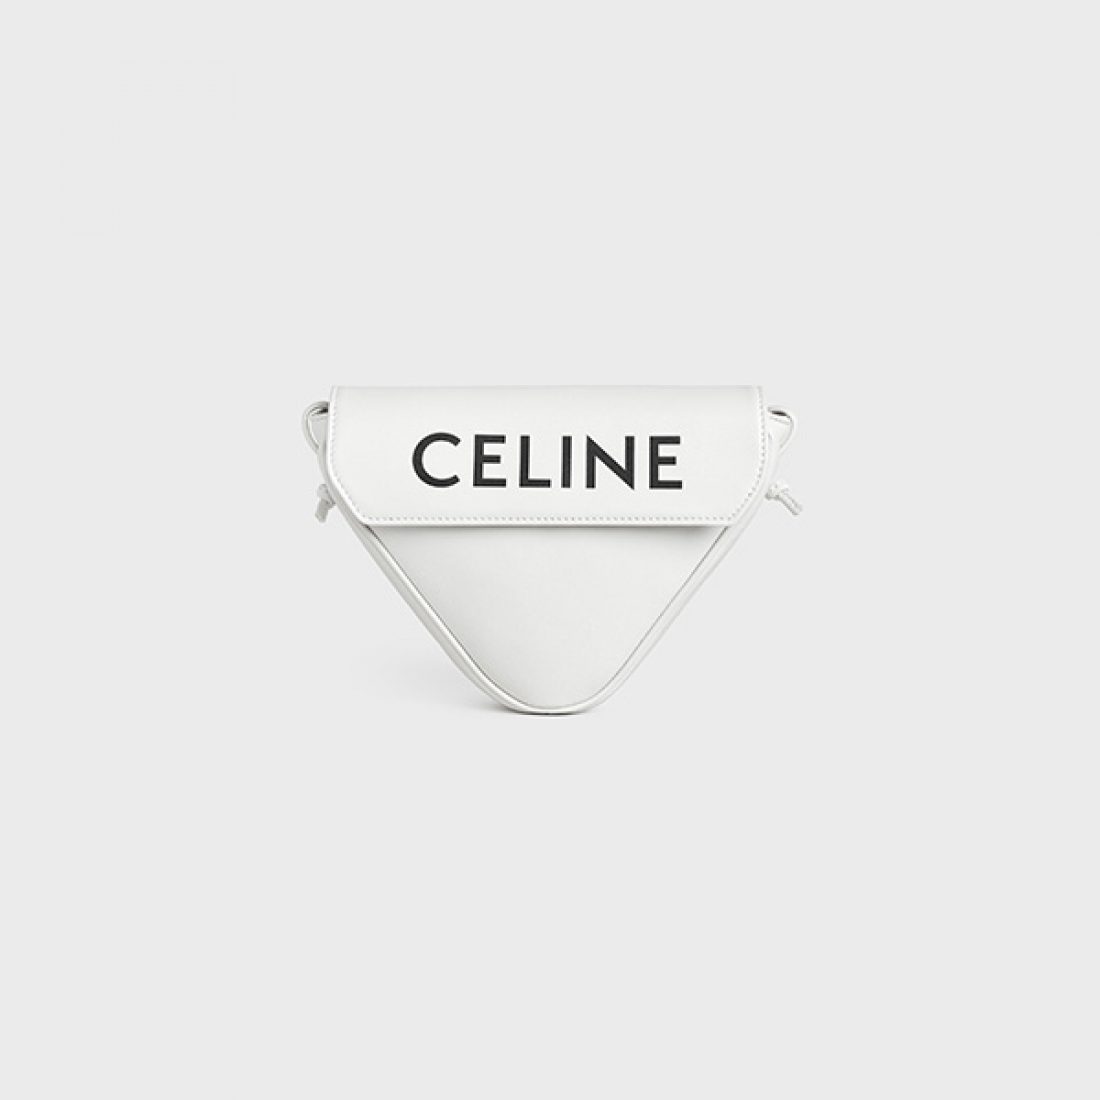 Chiếc túi tam giác nhỏ xinh của nhà Celine hứa hẹn làm mưa làm gió vào mùa hè 2021.